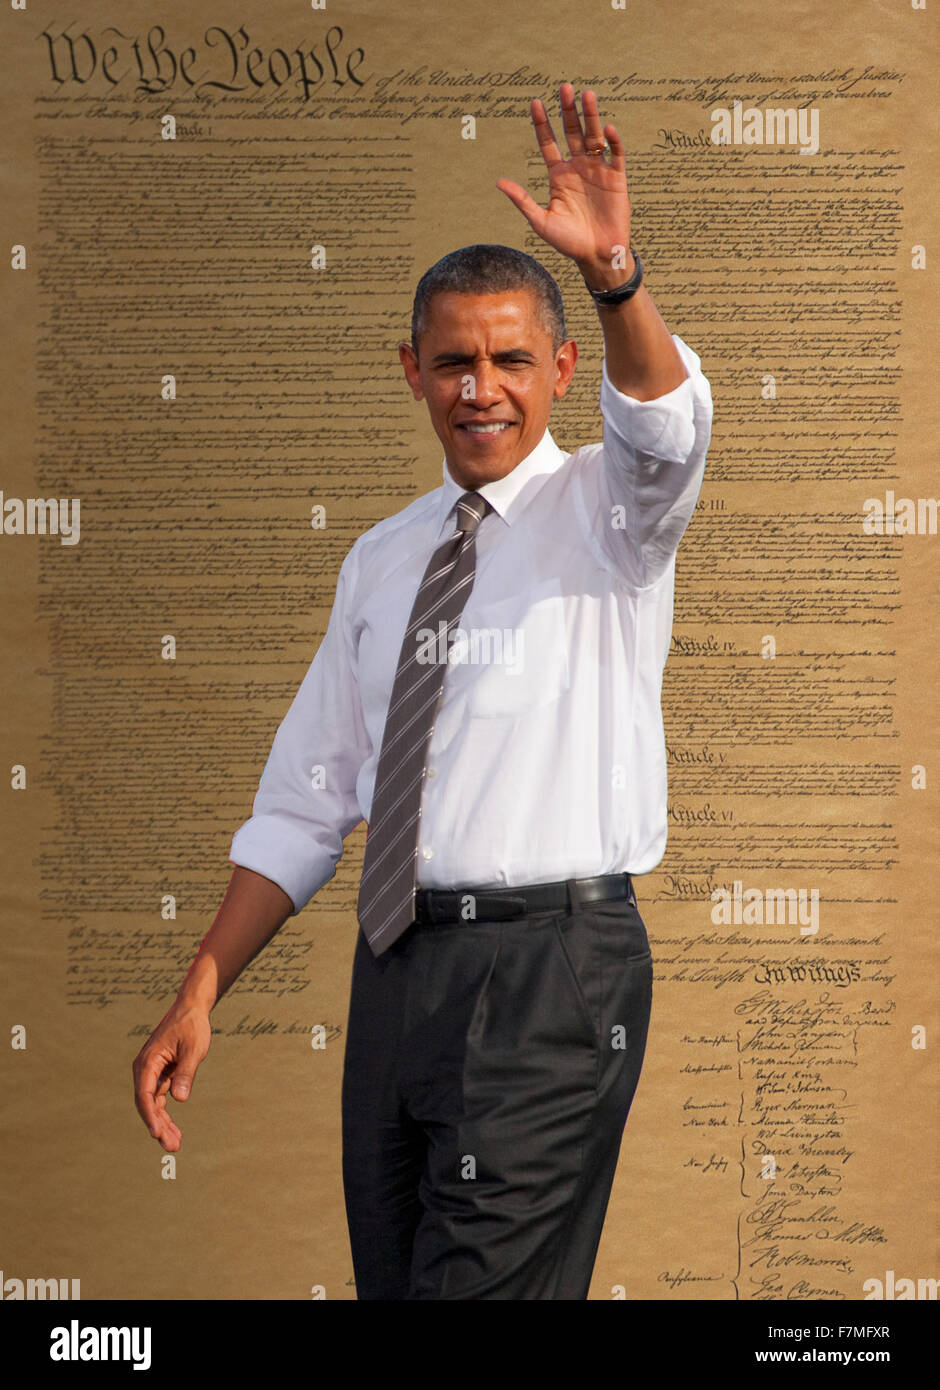 El presidente Barack Obama composite retrato tomado en noviembre de 2012, durante la campaña presidencial de 2012, Las Vegas, Nevada Foto de stock